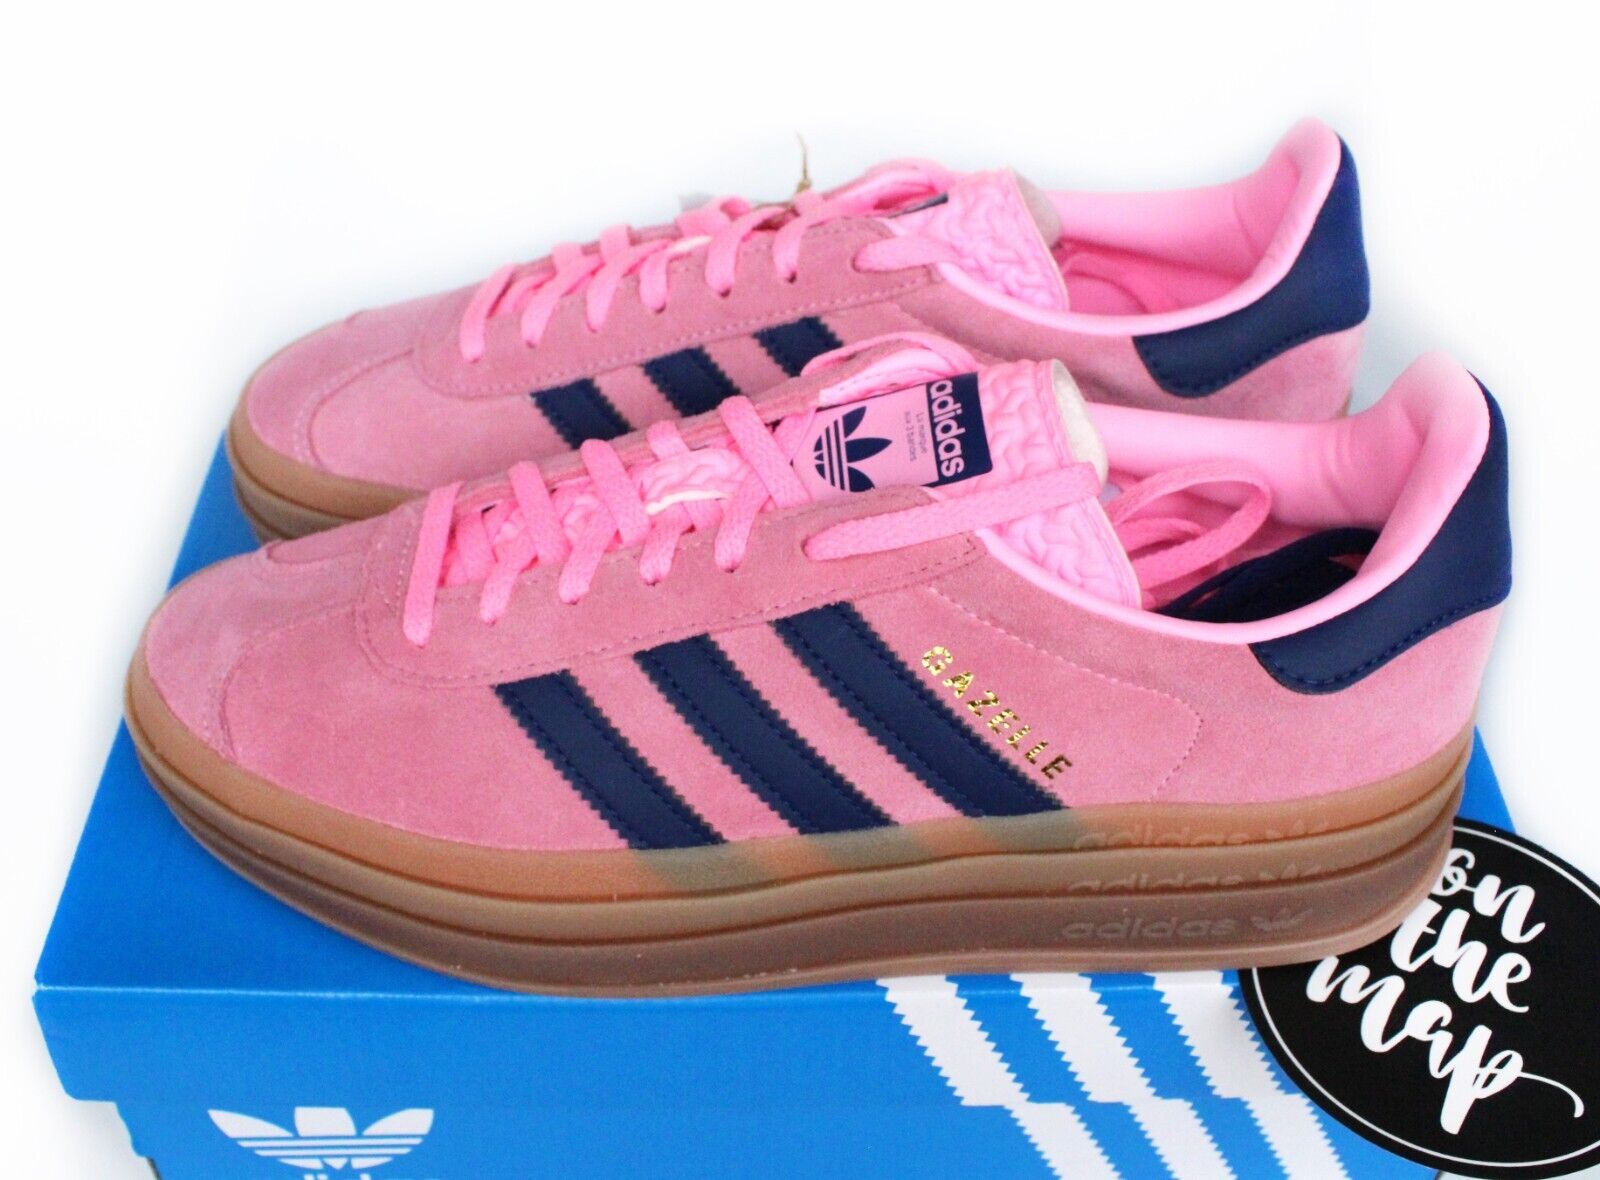 Adidas Originals Gazelle W Pink Glow Gum Platform UK 3 4 5 6 7 8 9 10 US | eBay